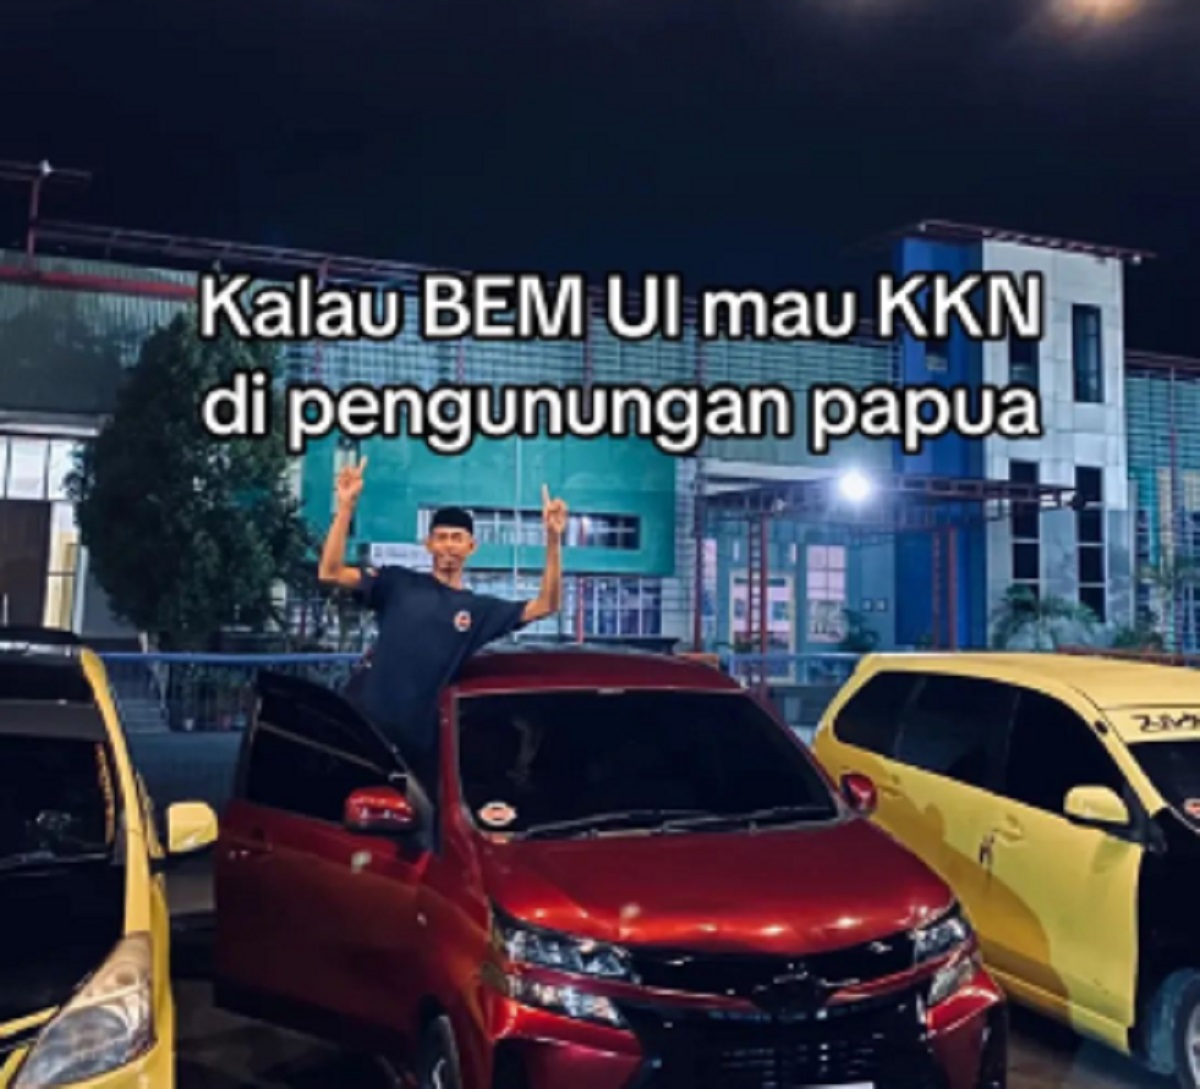 Pengusaha Rental Mobil Siap Fasilitasi BEM UI Jika KKN di Papua, Gratis!